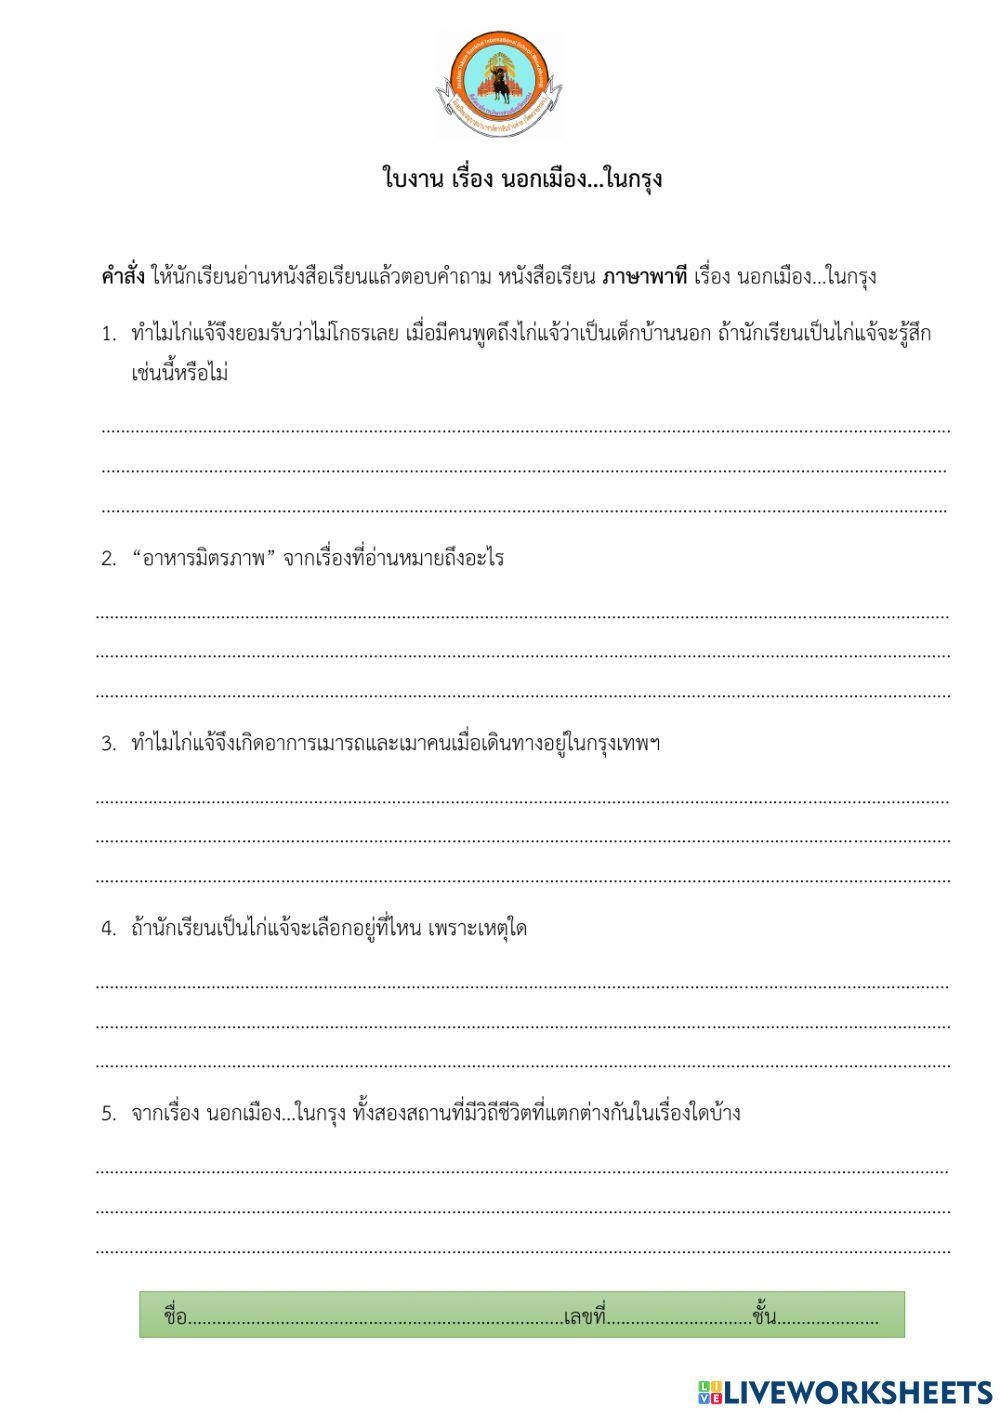 ใบงานภาษาไทย นอกเมือง...ในกรุง